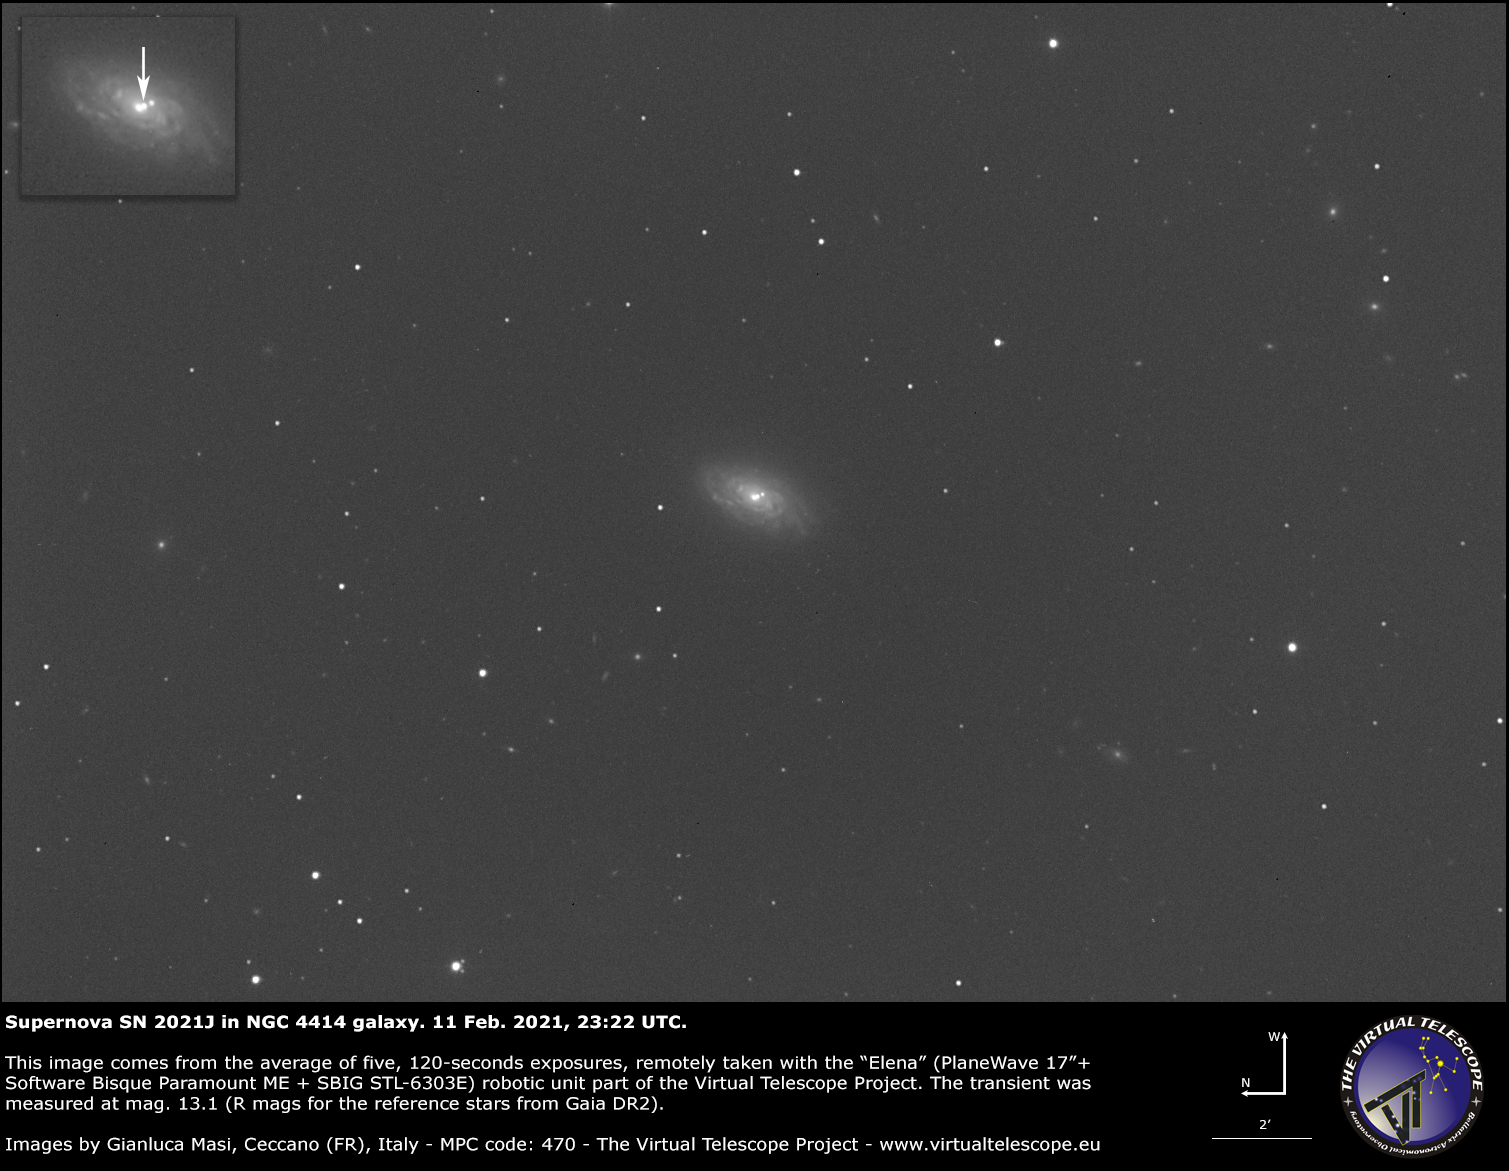 Supernova SN 2021J in NGC 4414 galaxy: 11 Feb. 2021.